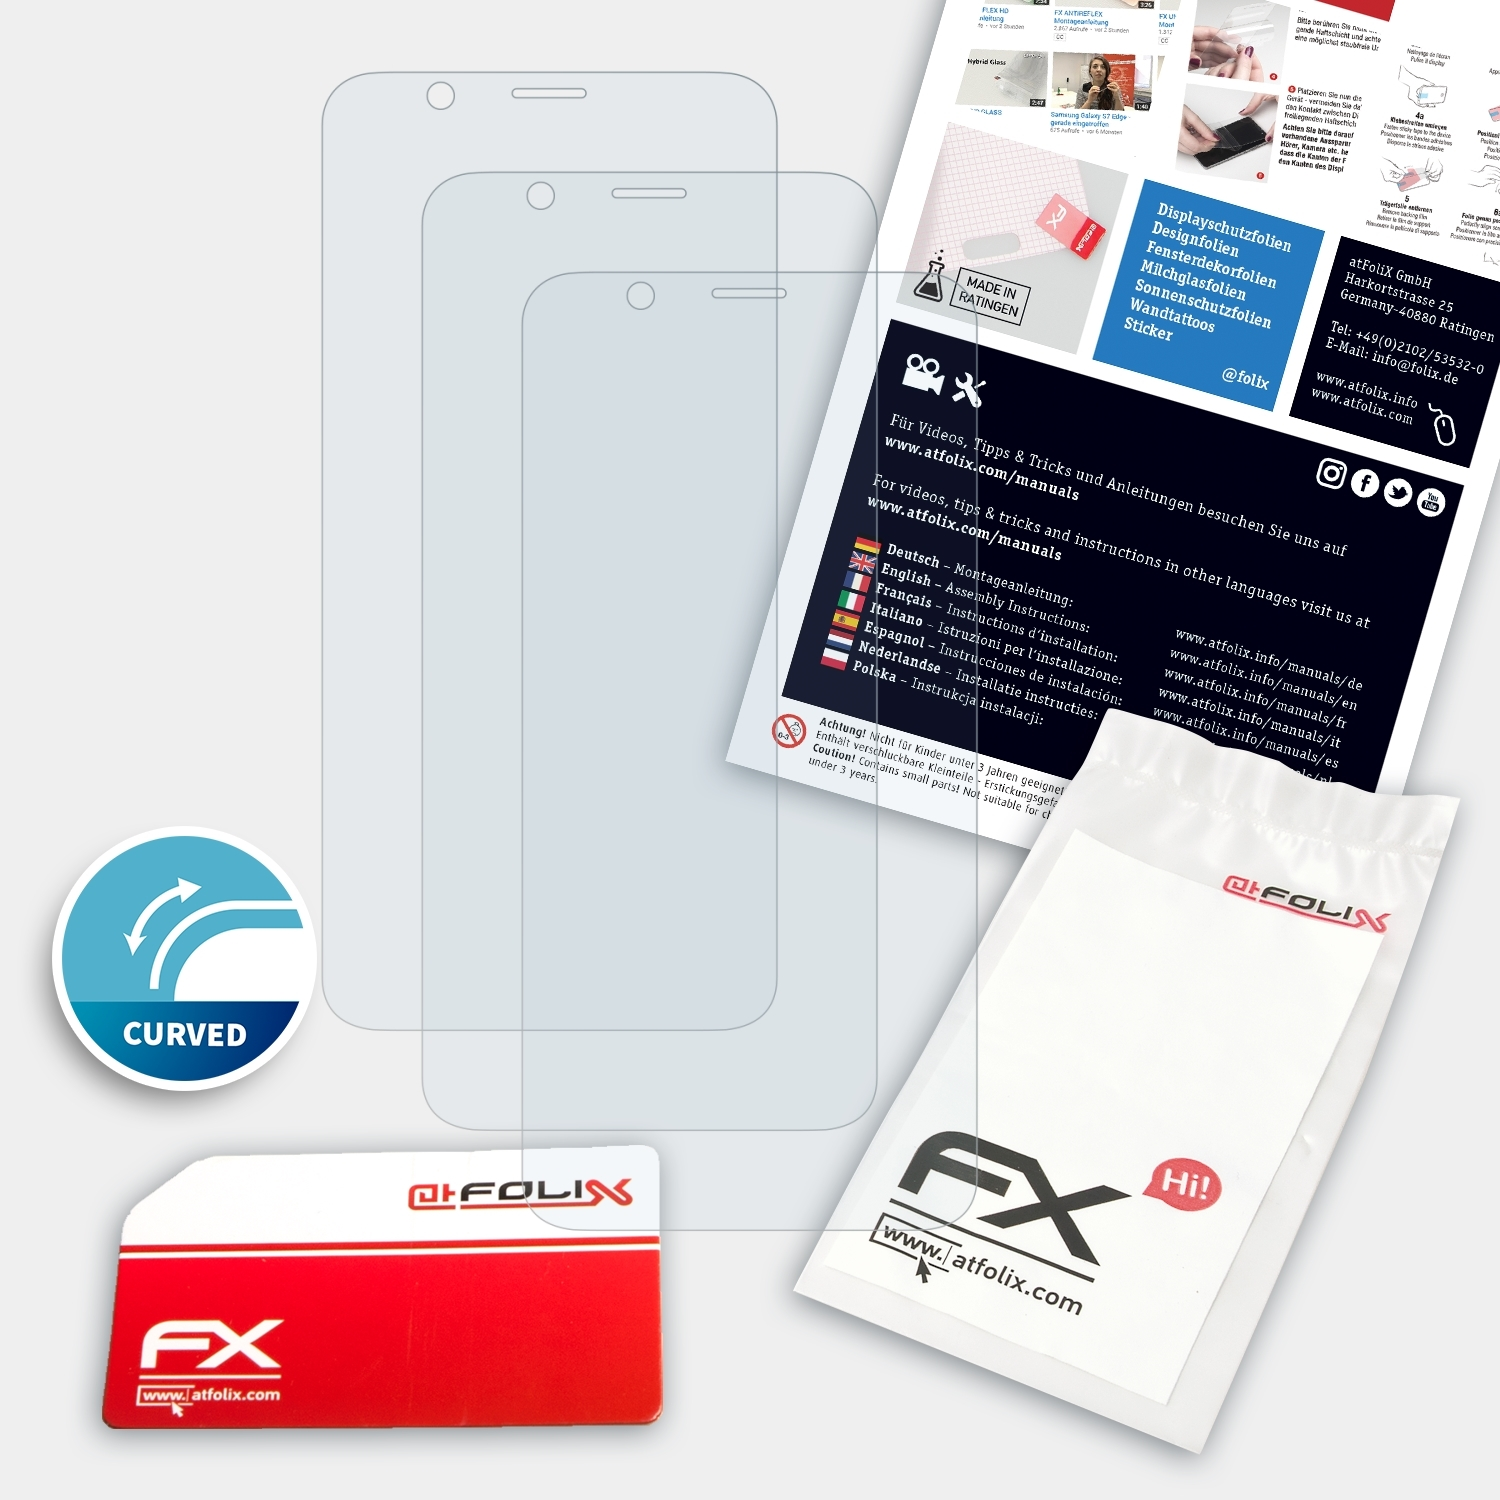 ATFOLIX 3x Plus) R11s Displayschutz(für FX-ActiFleX Oppo